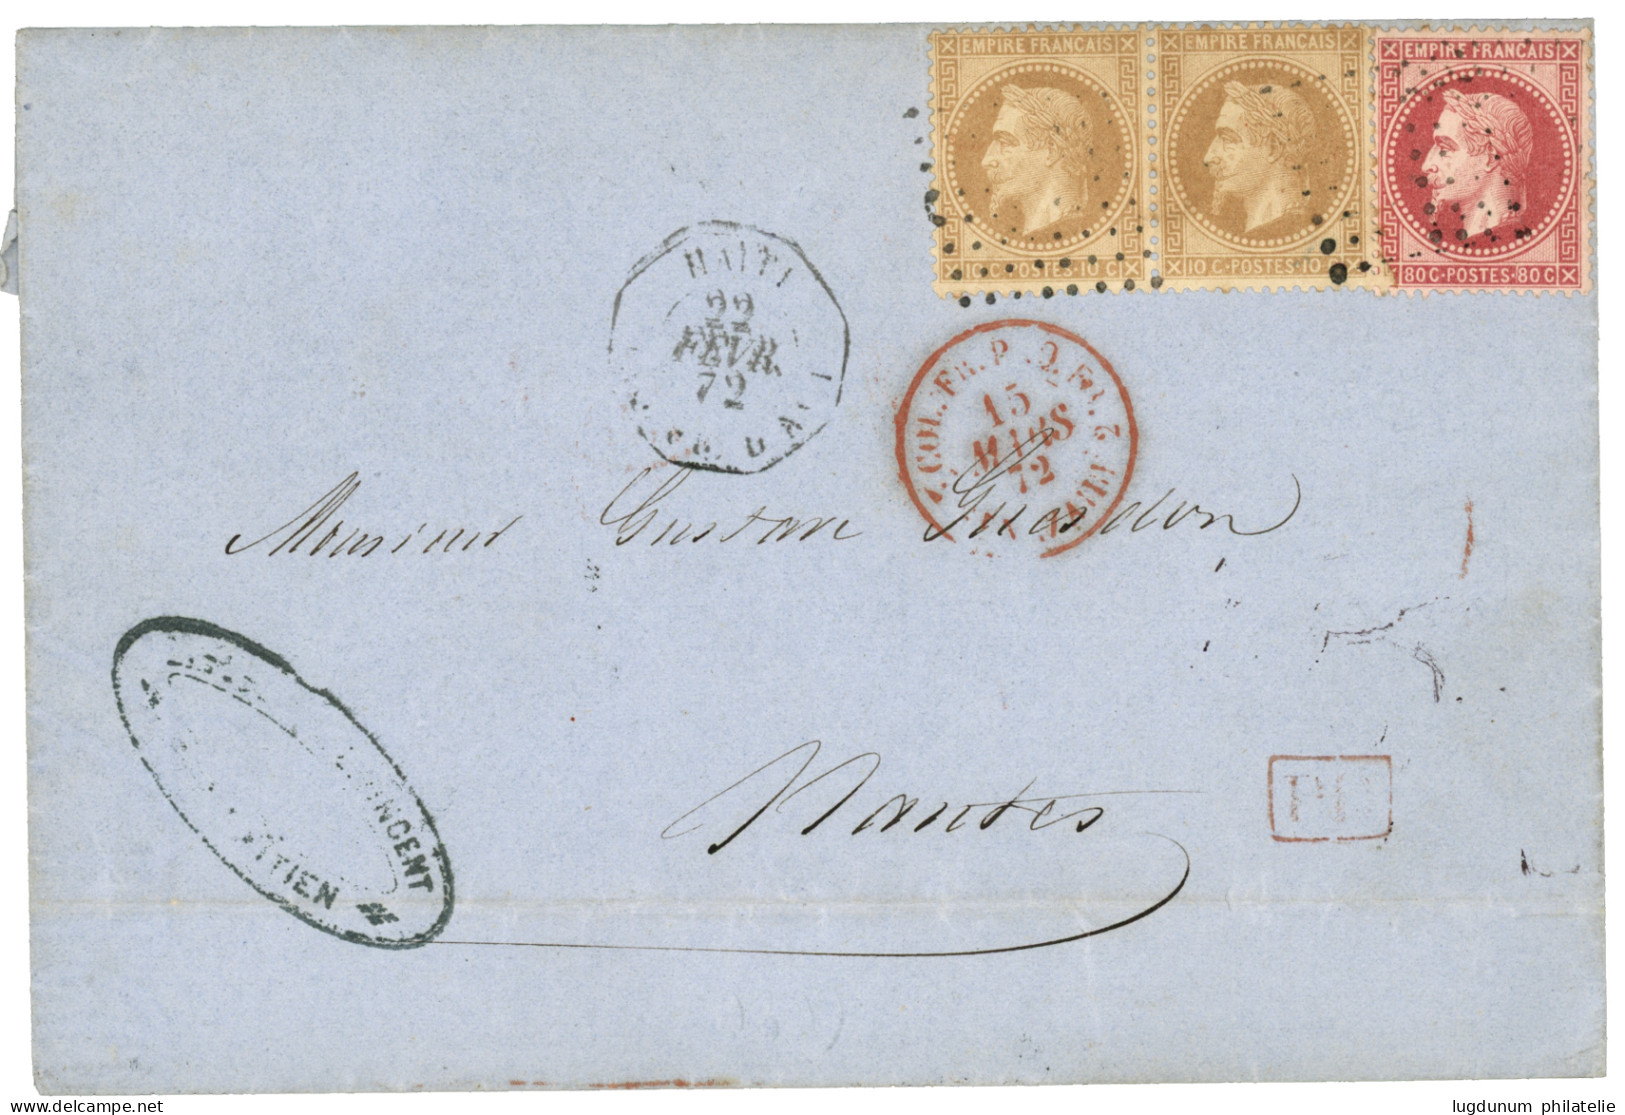 1872 10c (n°28)x2 + 80c (n°32) Obl. ANCRE + HAITI PAQ FR D N°1 Sur Lettre Du CAP HAITIEN Pour NANTES. RARE. TB. - Maritime Post